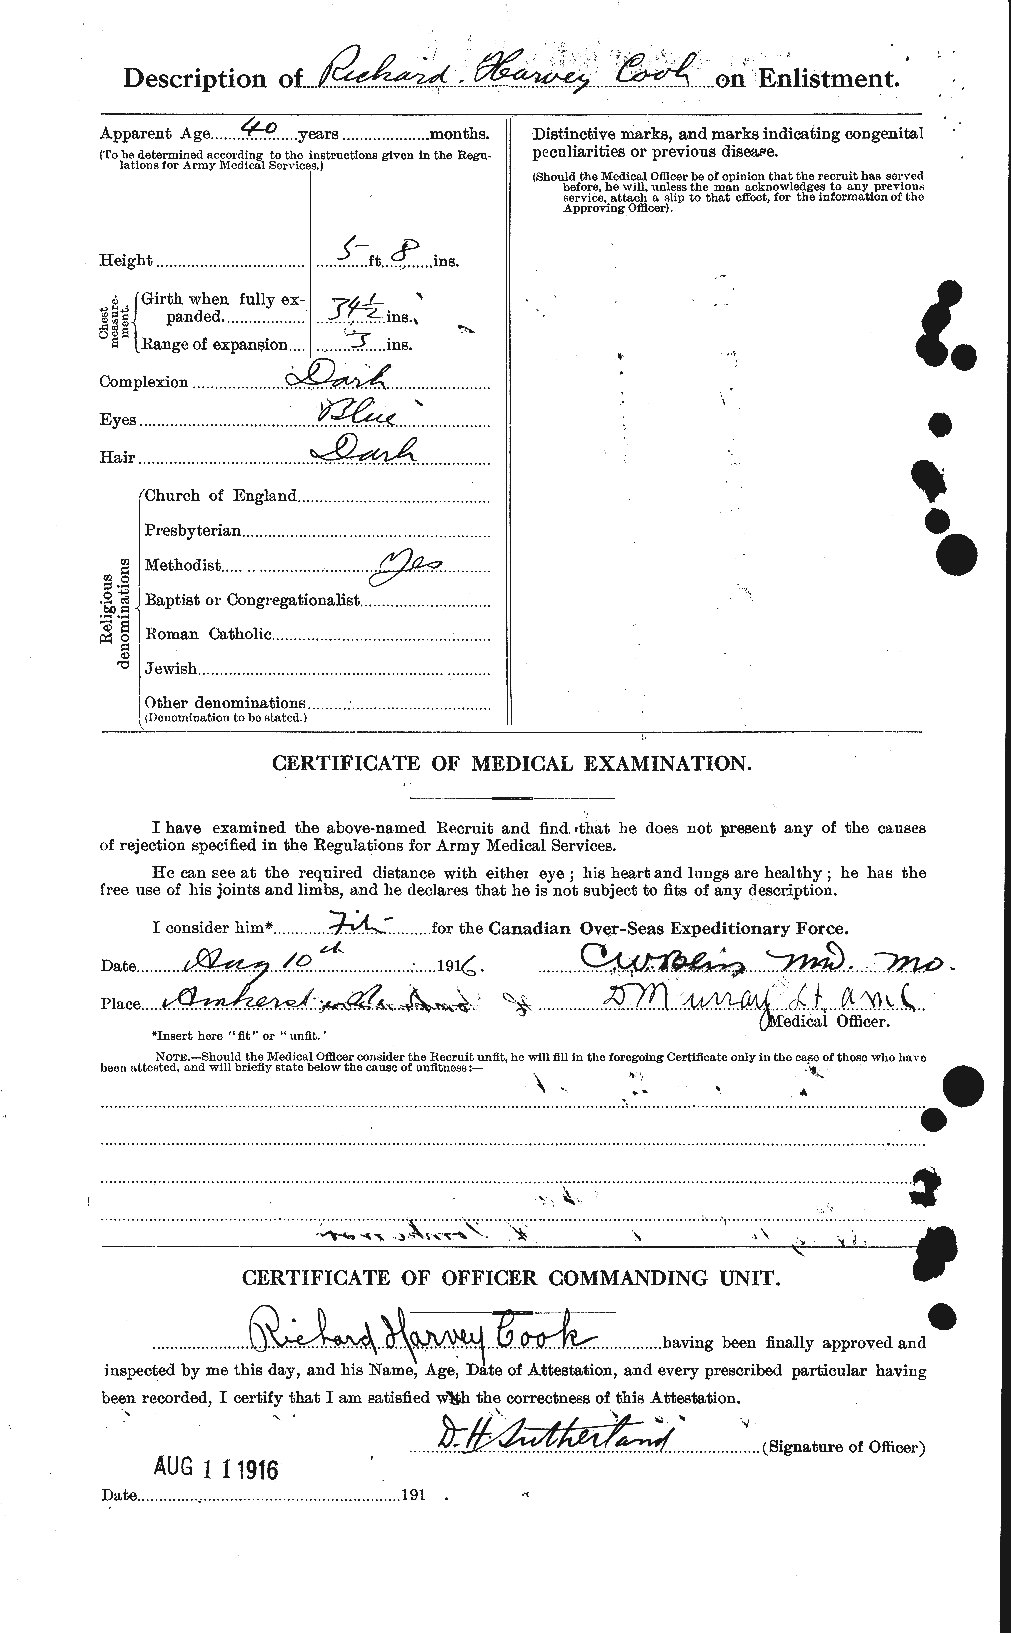 Dossiers du Personnel de la Première Guerre mondiale - CEC 075180b